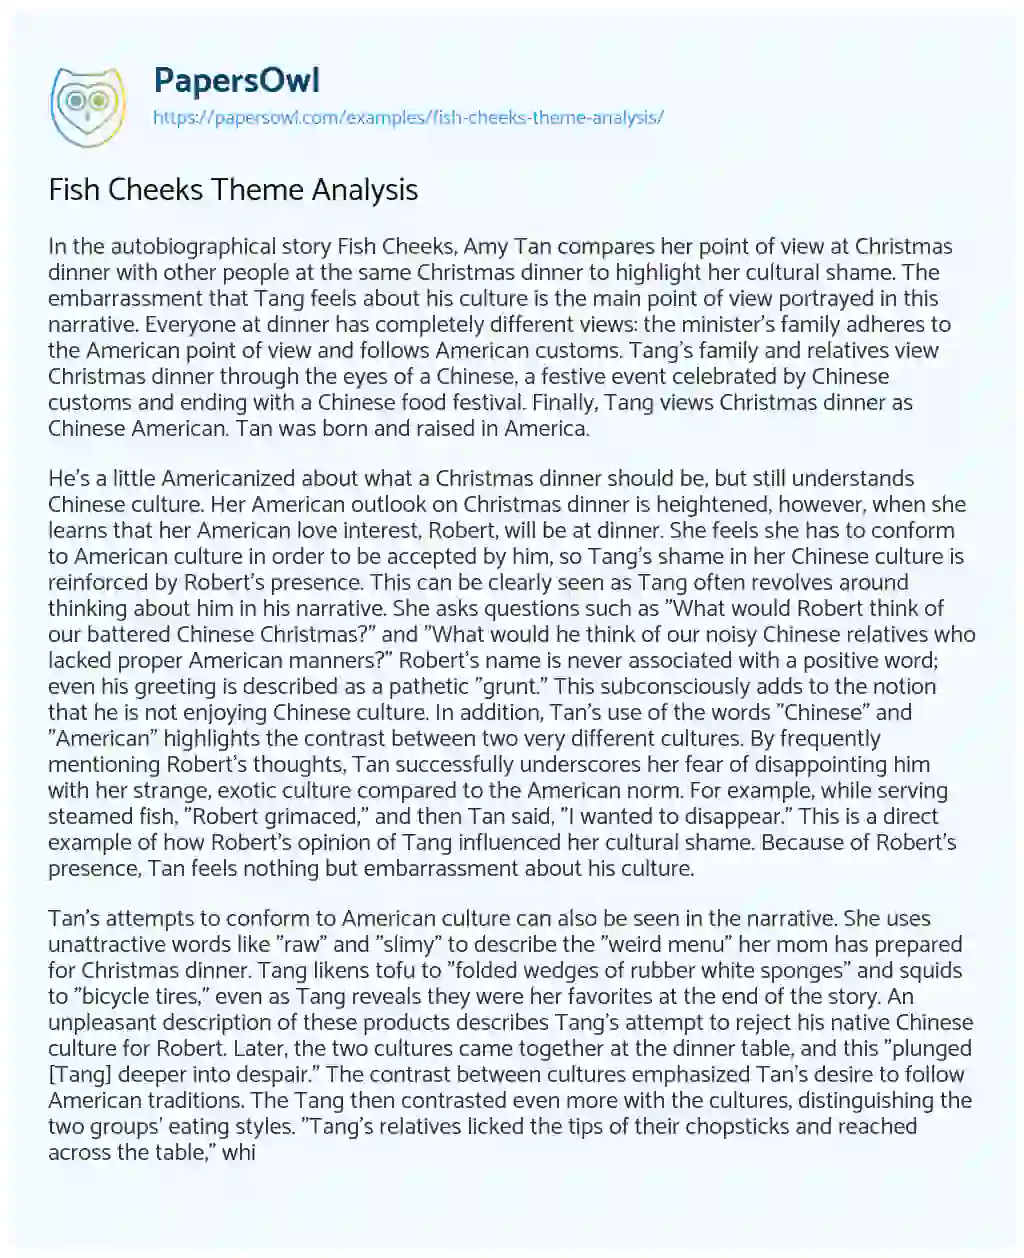 Fish Cheeks Theme Analysis essay